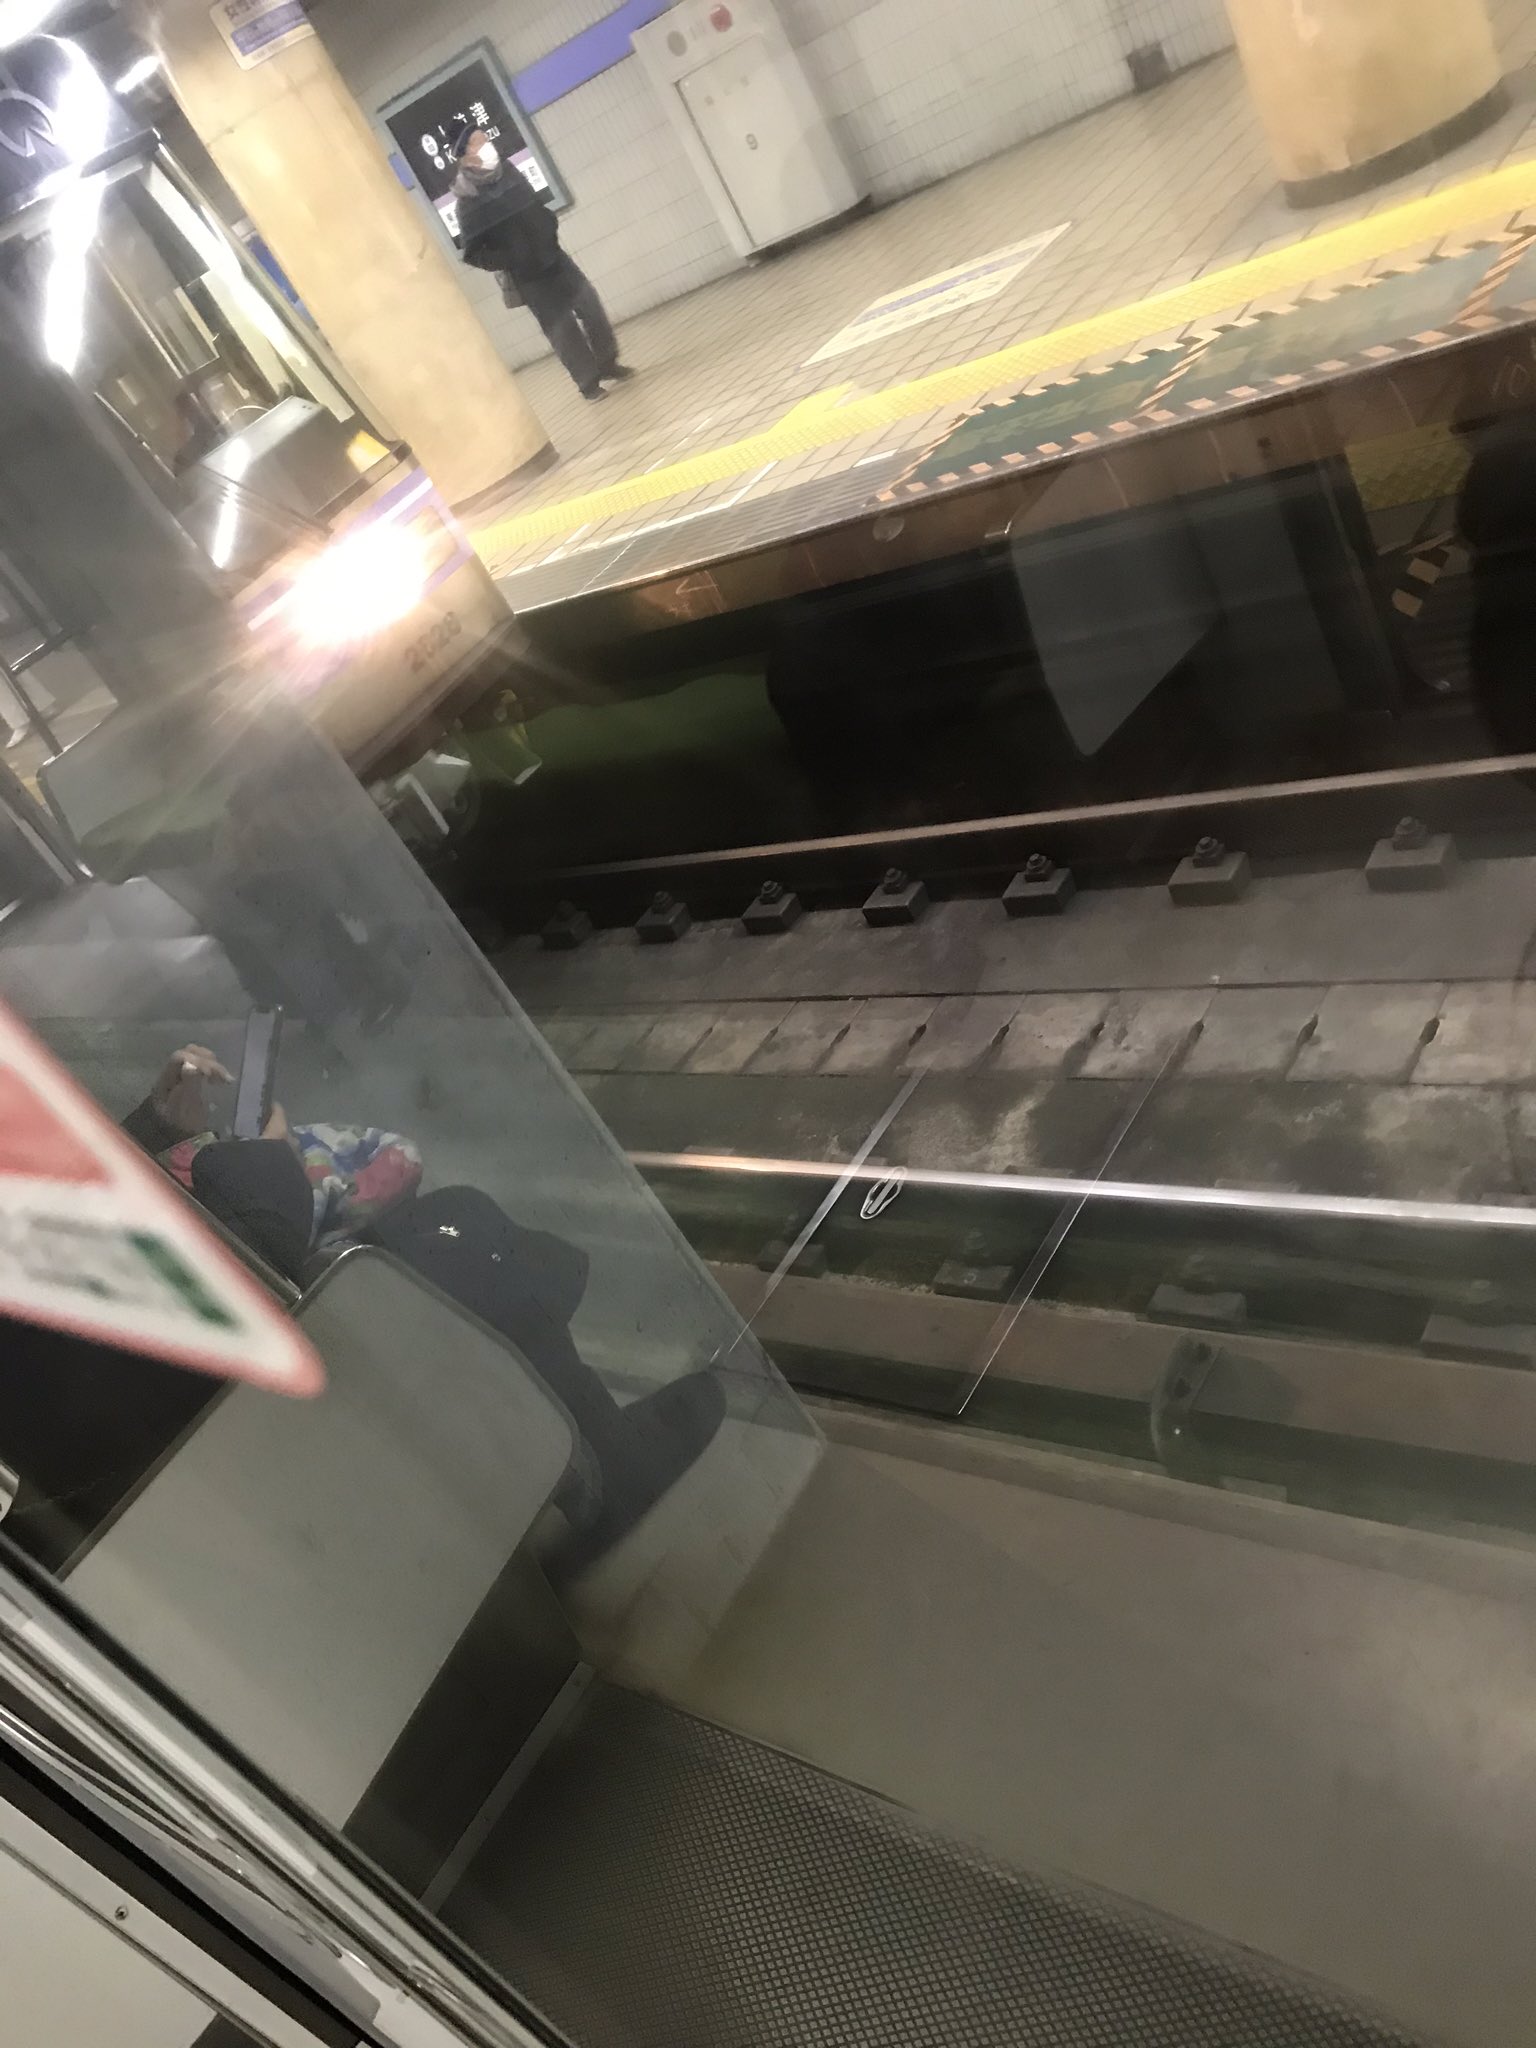 名古屋市営地下鉄名城線の上前津駅で人身事故が起きた現場の画像